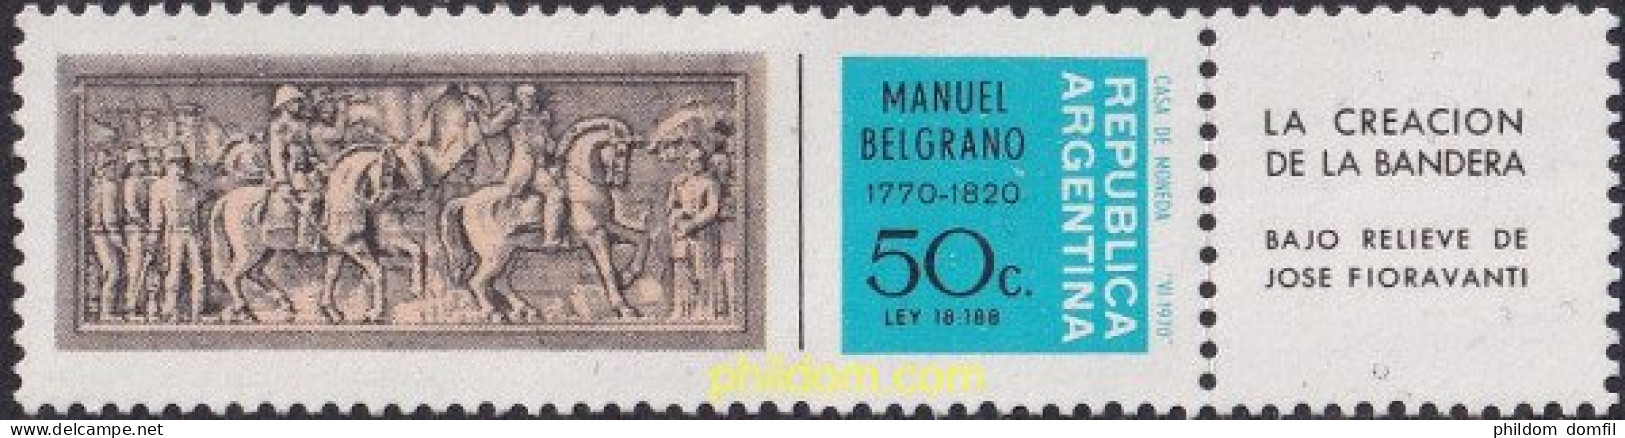 727250 HINGED ARGENTINA 1970 200 ANIVERSARIO DEL GENERAL MANUEL BELGRANO - Nuevos